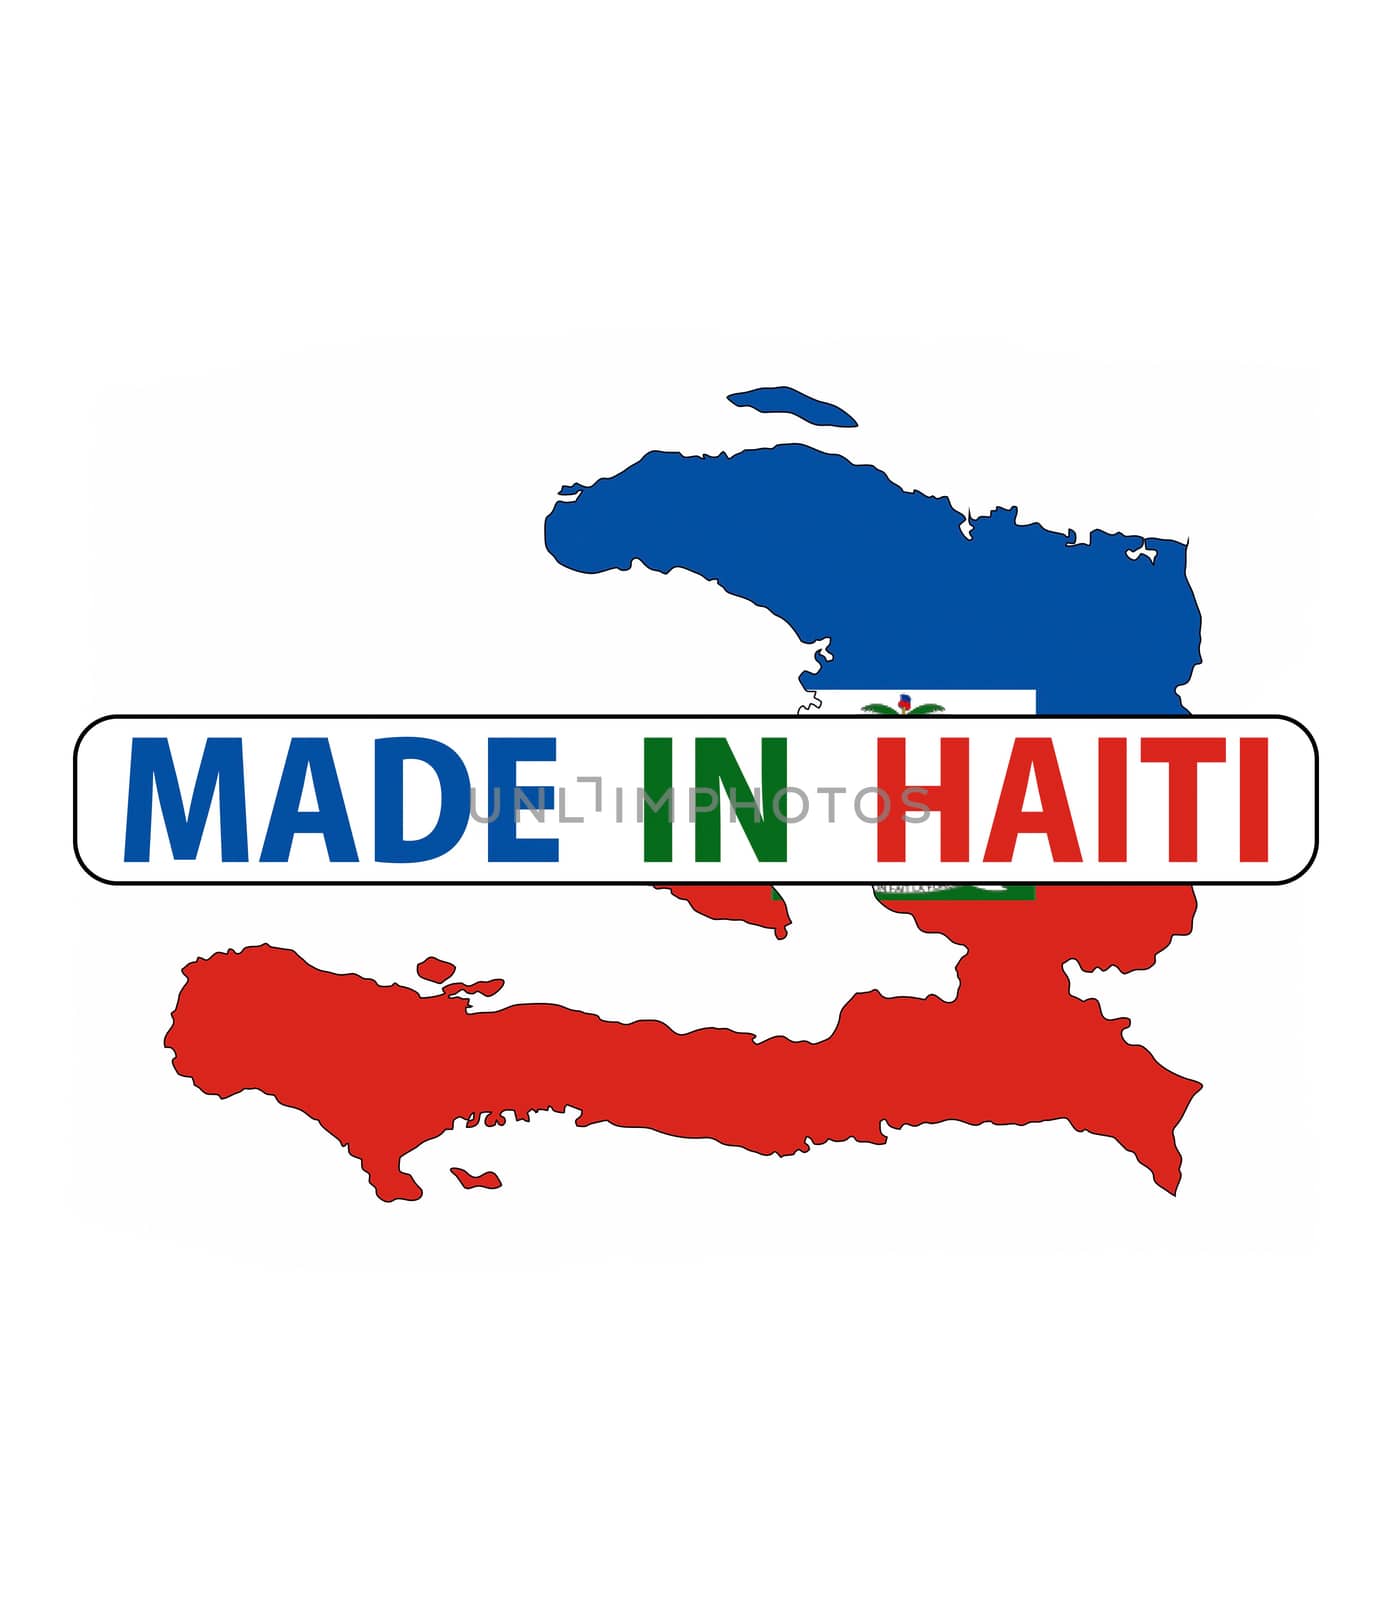 made in haiti by tony4urban